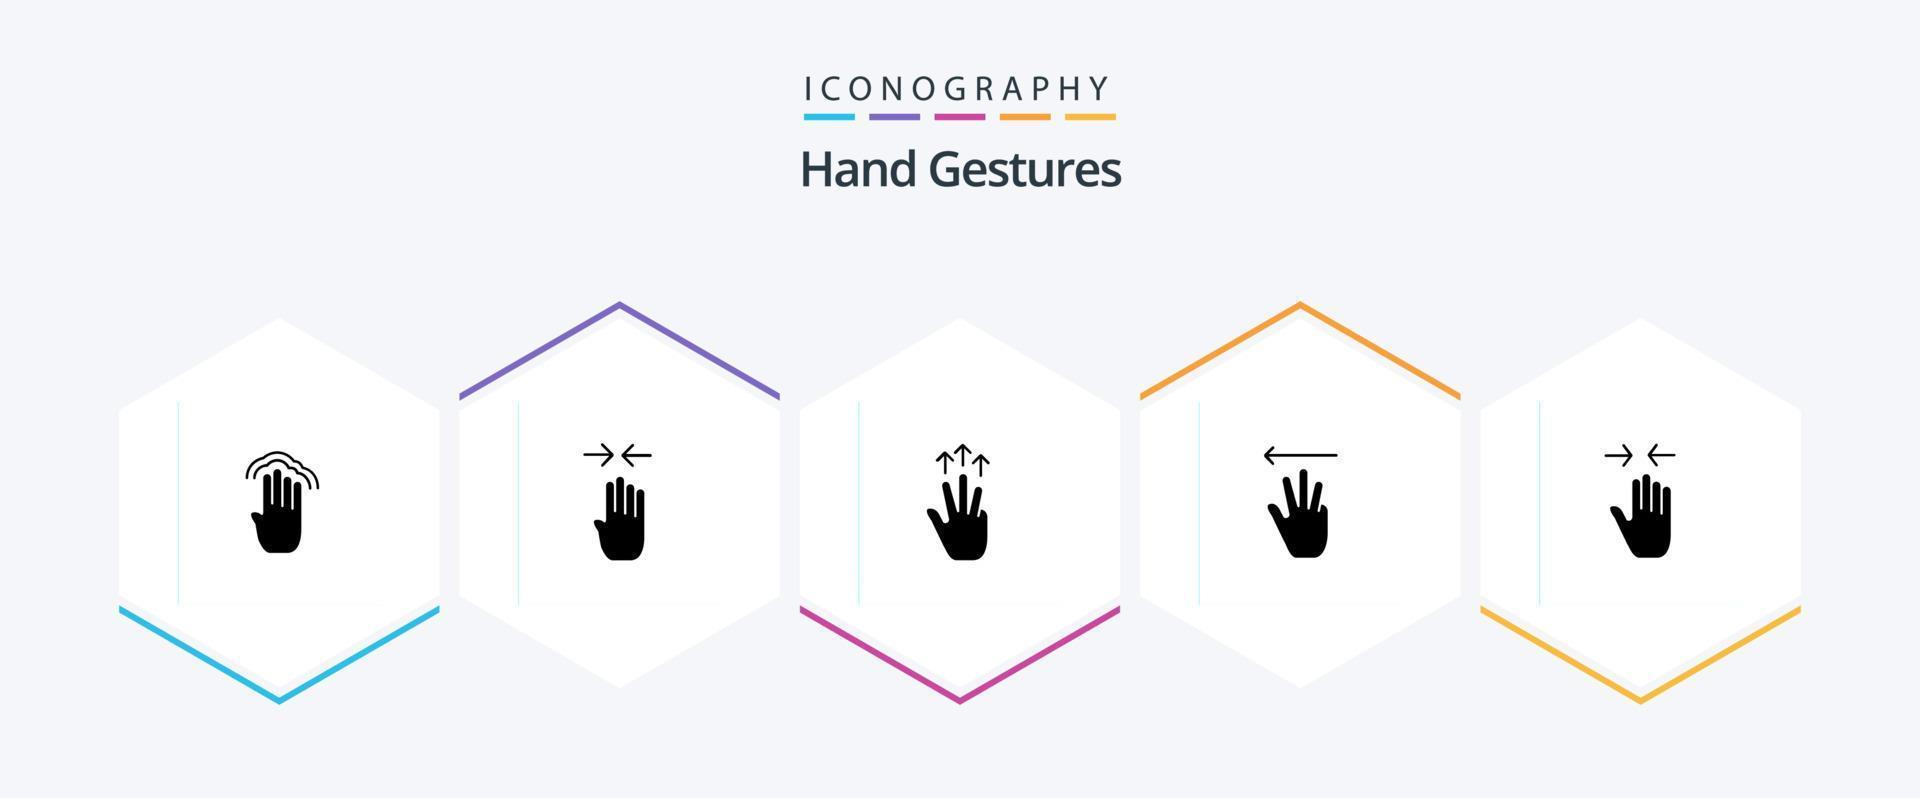 Paquete de iconos de 25 glifos con gestos manuales, incluido el izquierdo. cursor de mano pellizco. mano. tres dedos vector